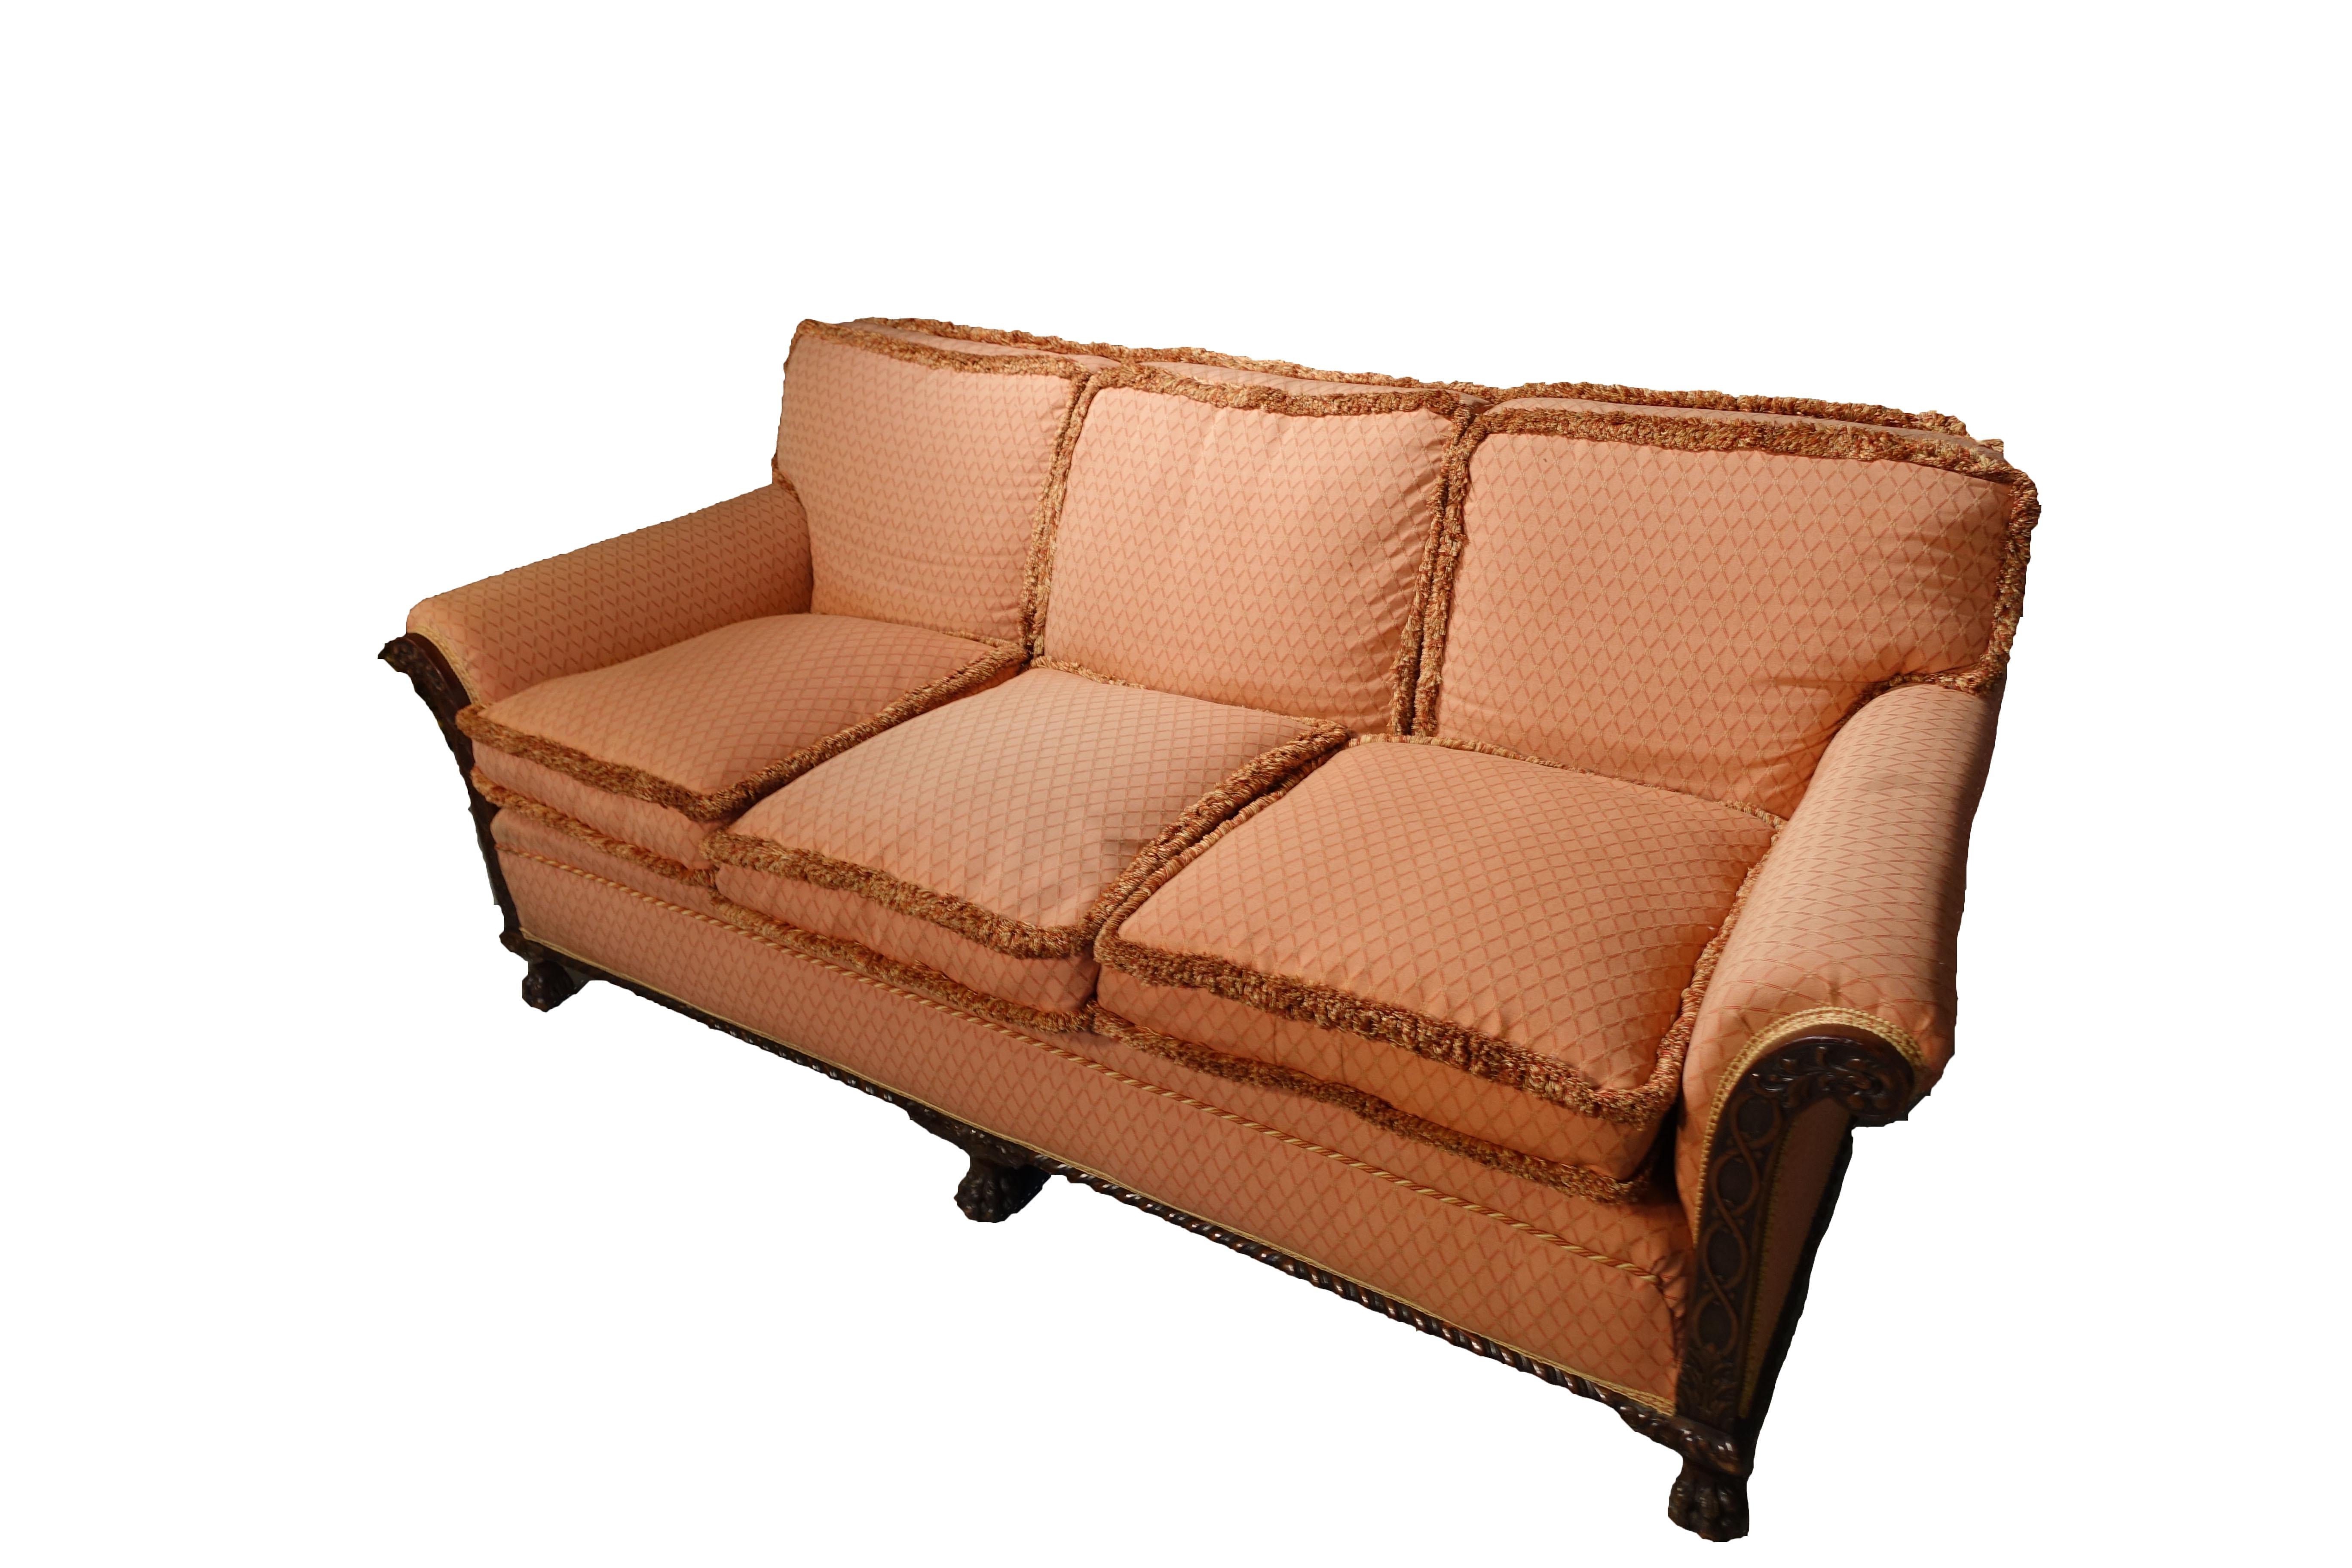 1920s sofa styles